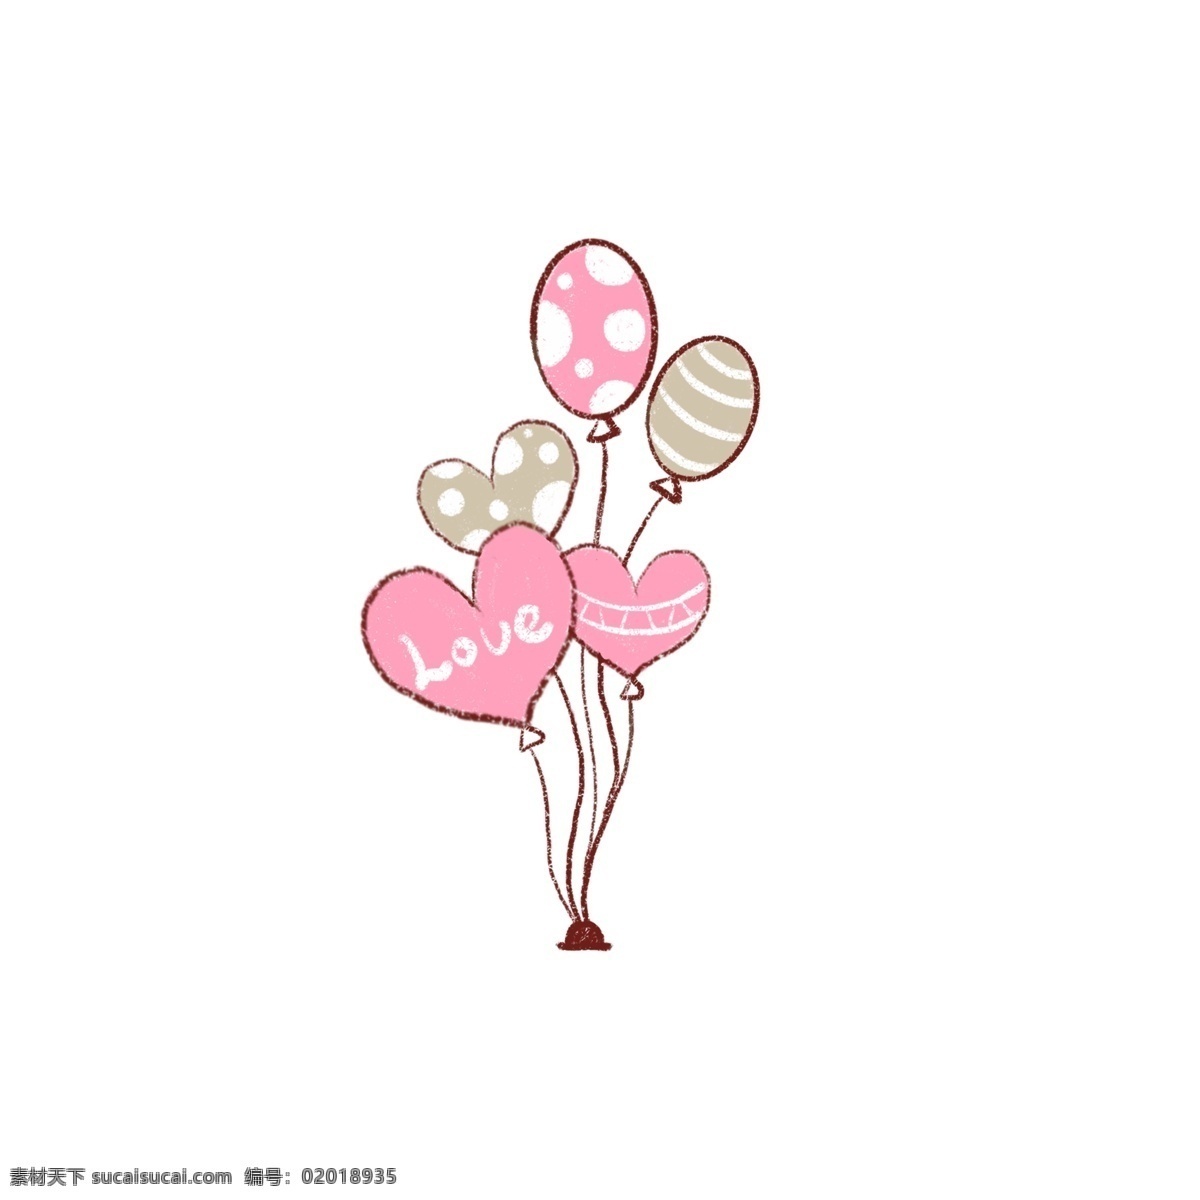 亲亲 情人节 爱心 气球 原创 装饰 心形气球 粉色 灰色 气球装饰 亲亲情人节